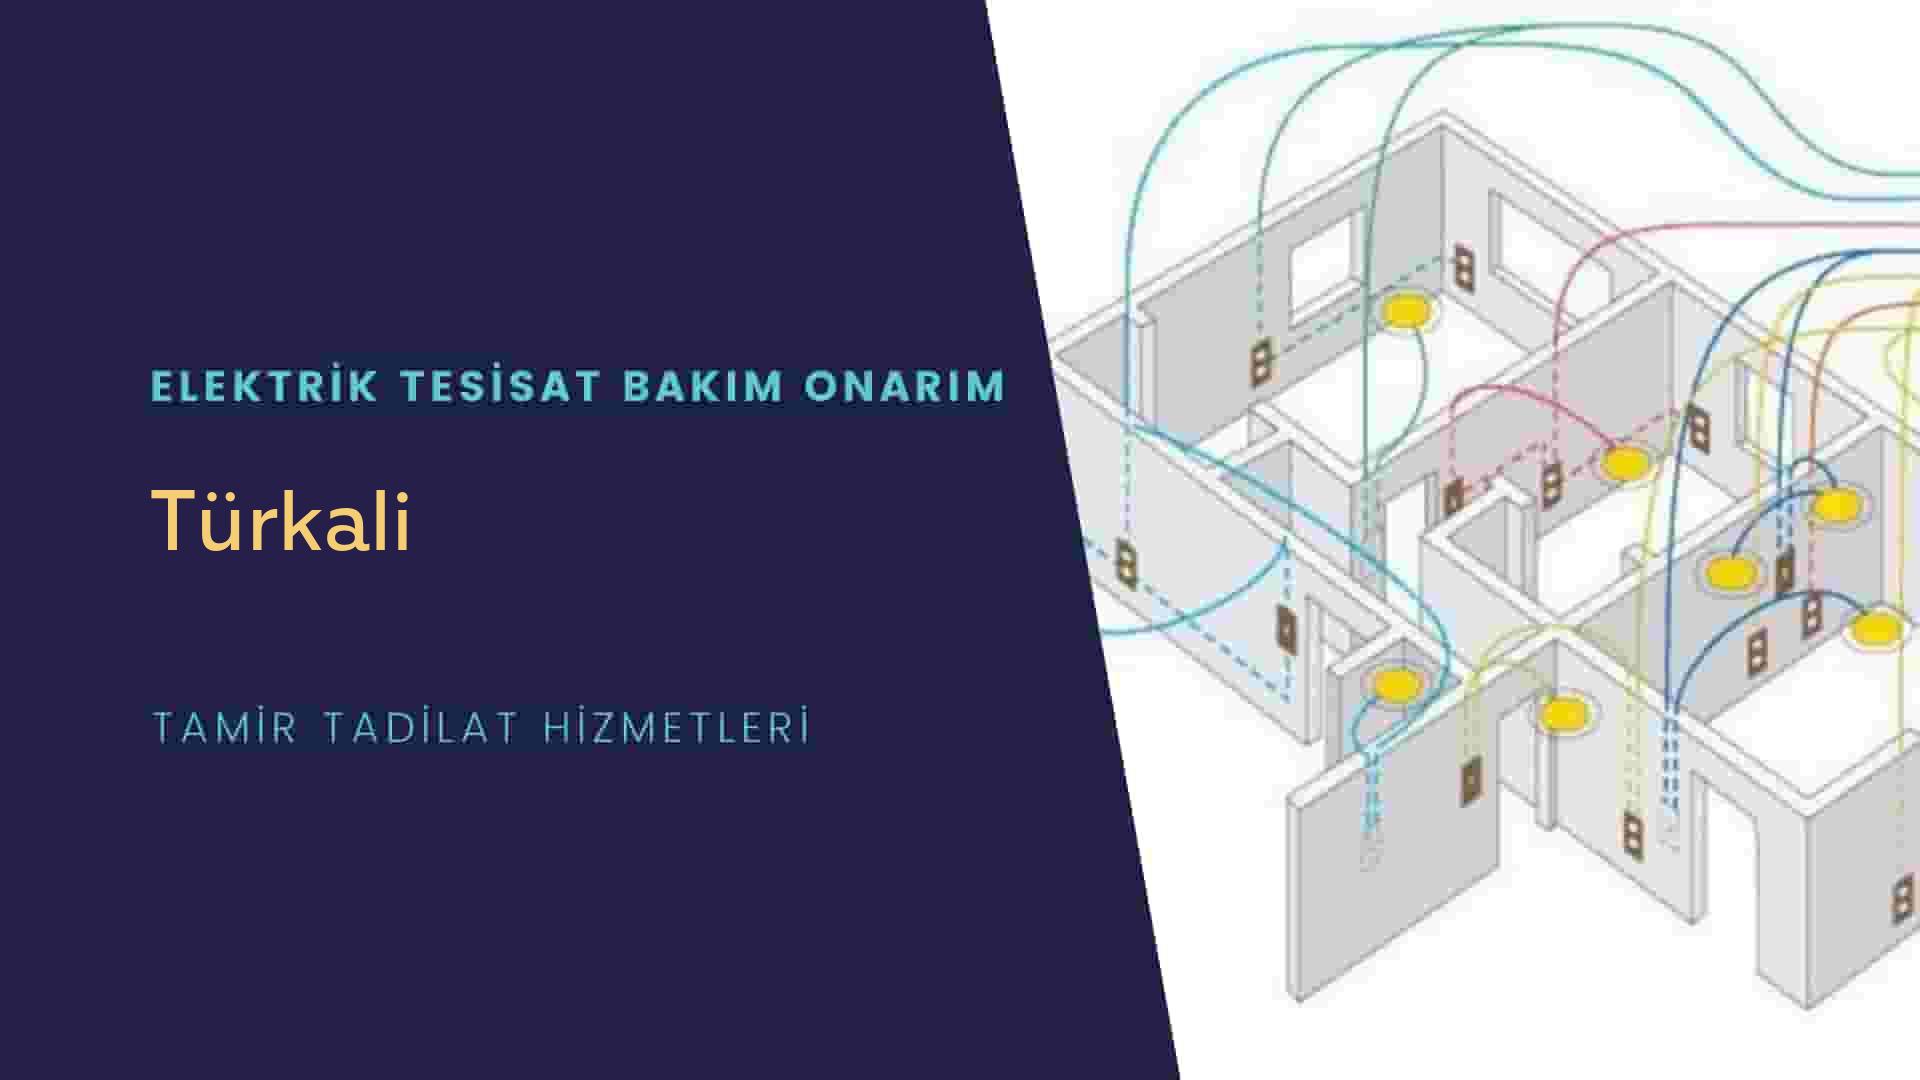 Türkali'de elektrik tesisatı ustalarımı arıyorsunuz doğru adrestenizi Türkali elektrik tesisatı ustalarımız 7/24 sizlere hizmet vermekten mutluluk duyar.